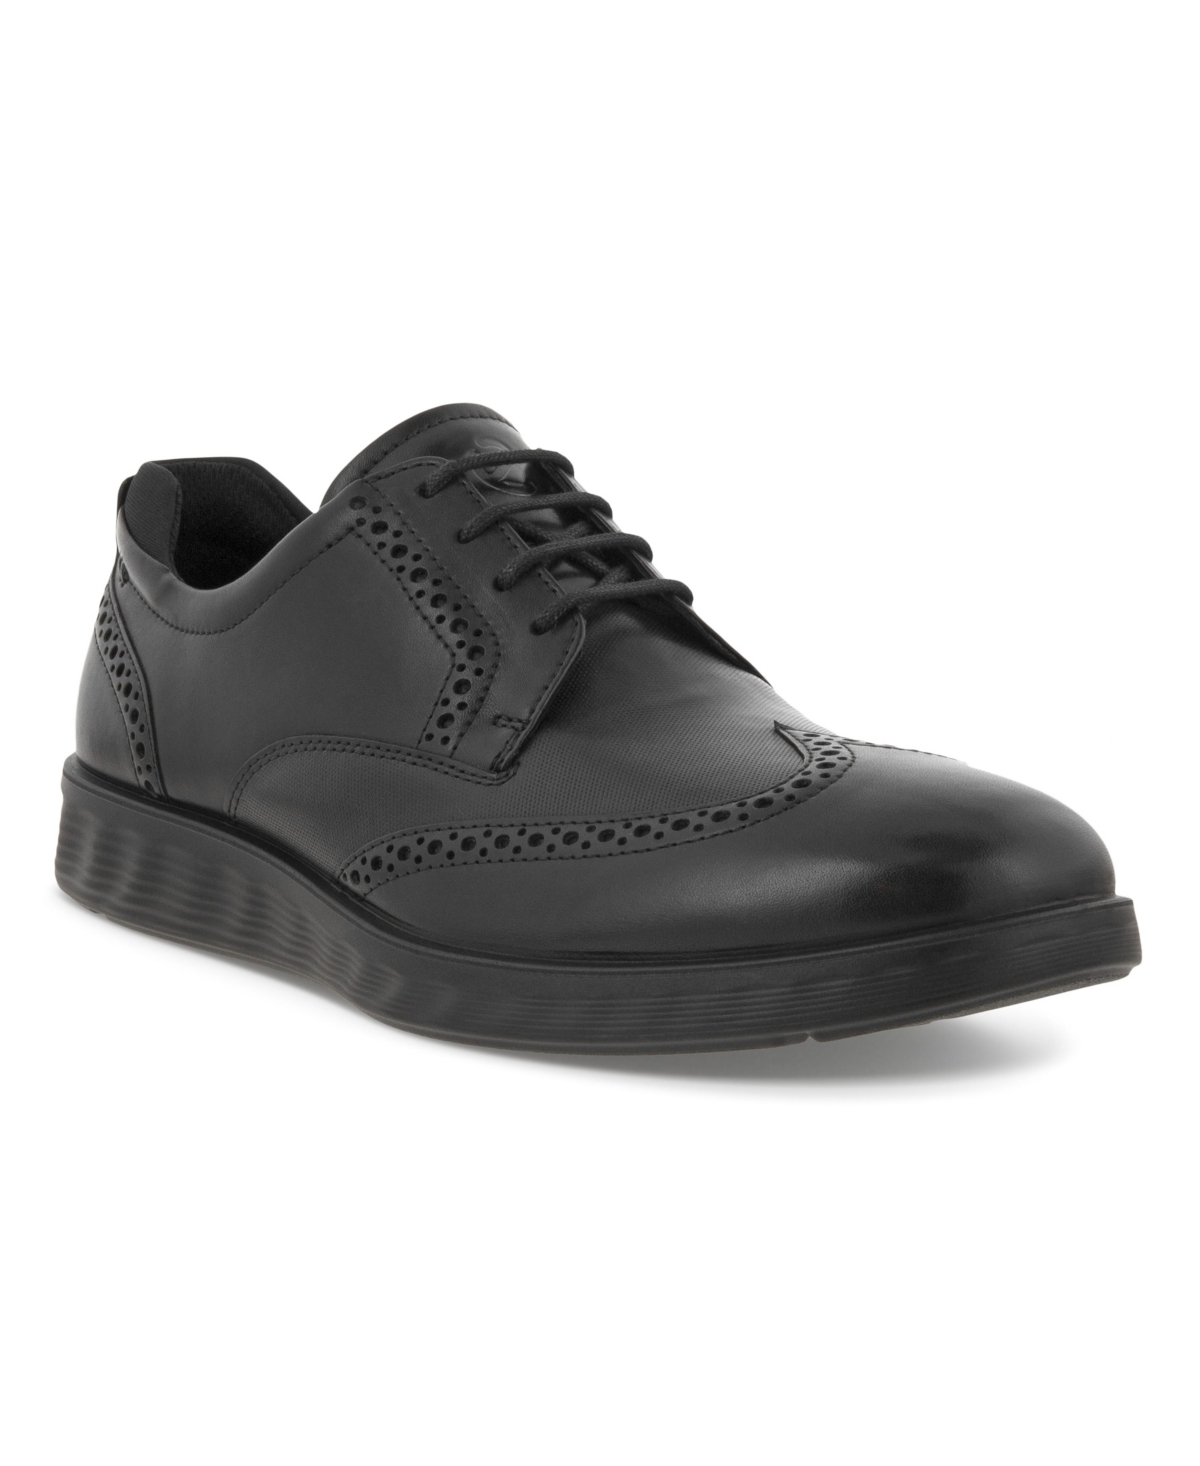 Men's S Lite Hybrid Brogue Shoes - Black